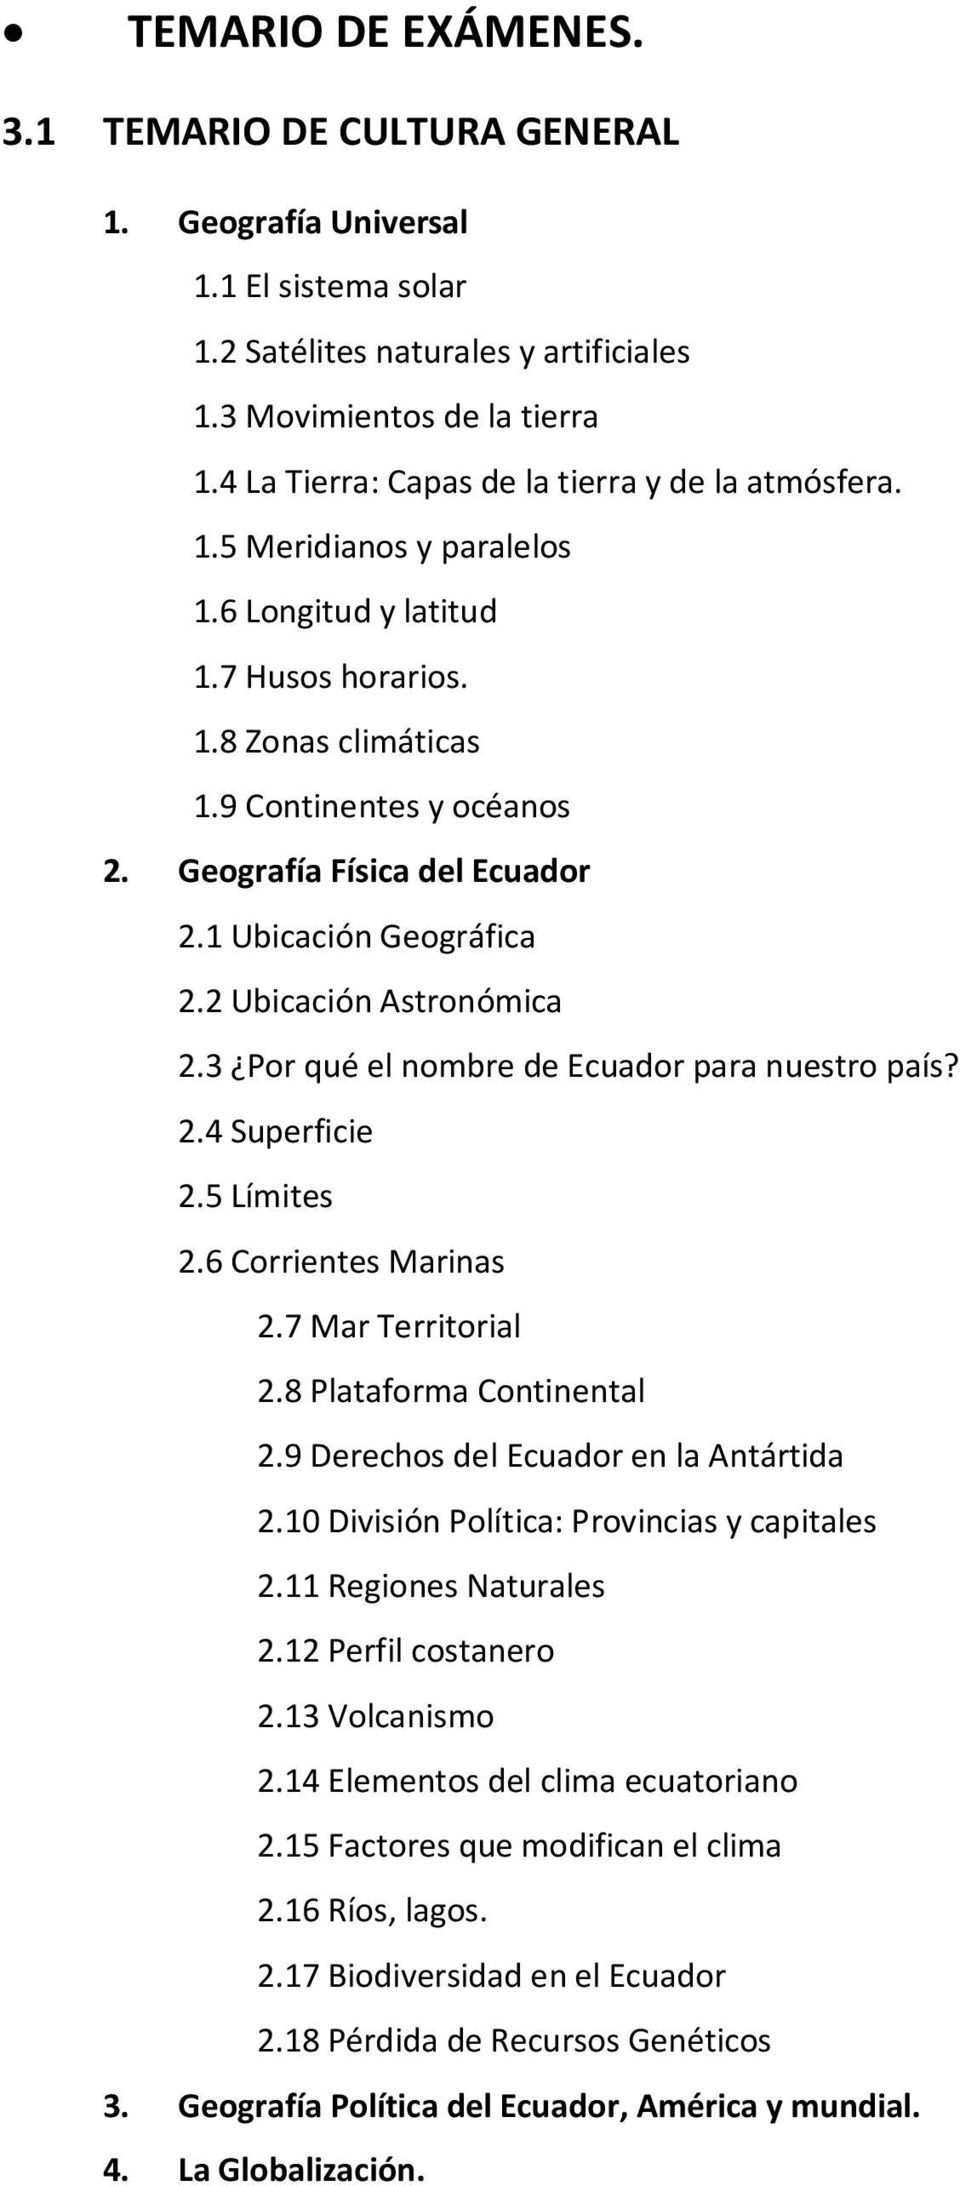 Geografía Física del Ecuador 2.1 Ubicación Geográfica 2.2 Ubicación Astronómica 2.3 Por qué el nombre de Ecuador para nuestro país? 2.4 Superficie 2.5 Límites 2.6 Corrientes Marinas 2.